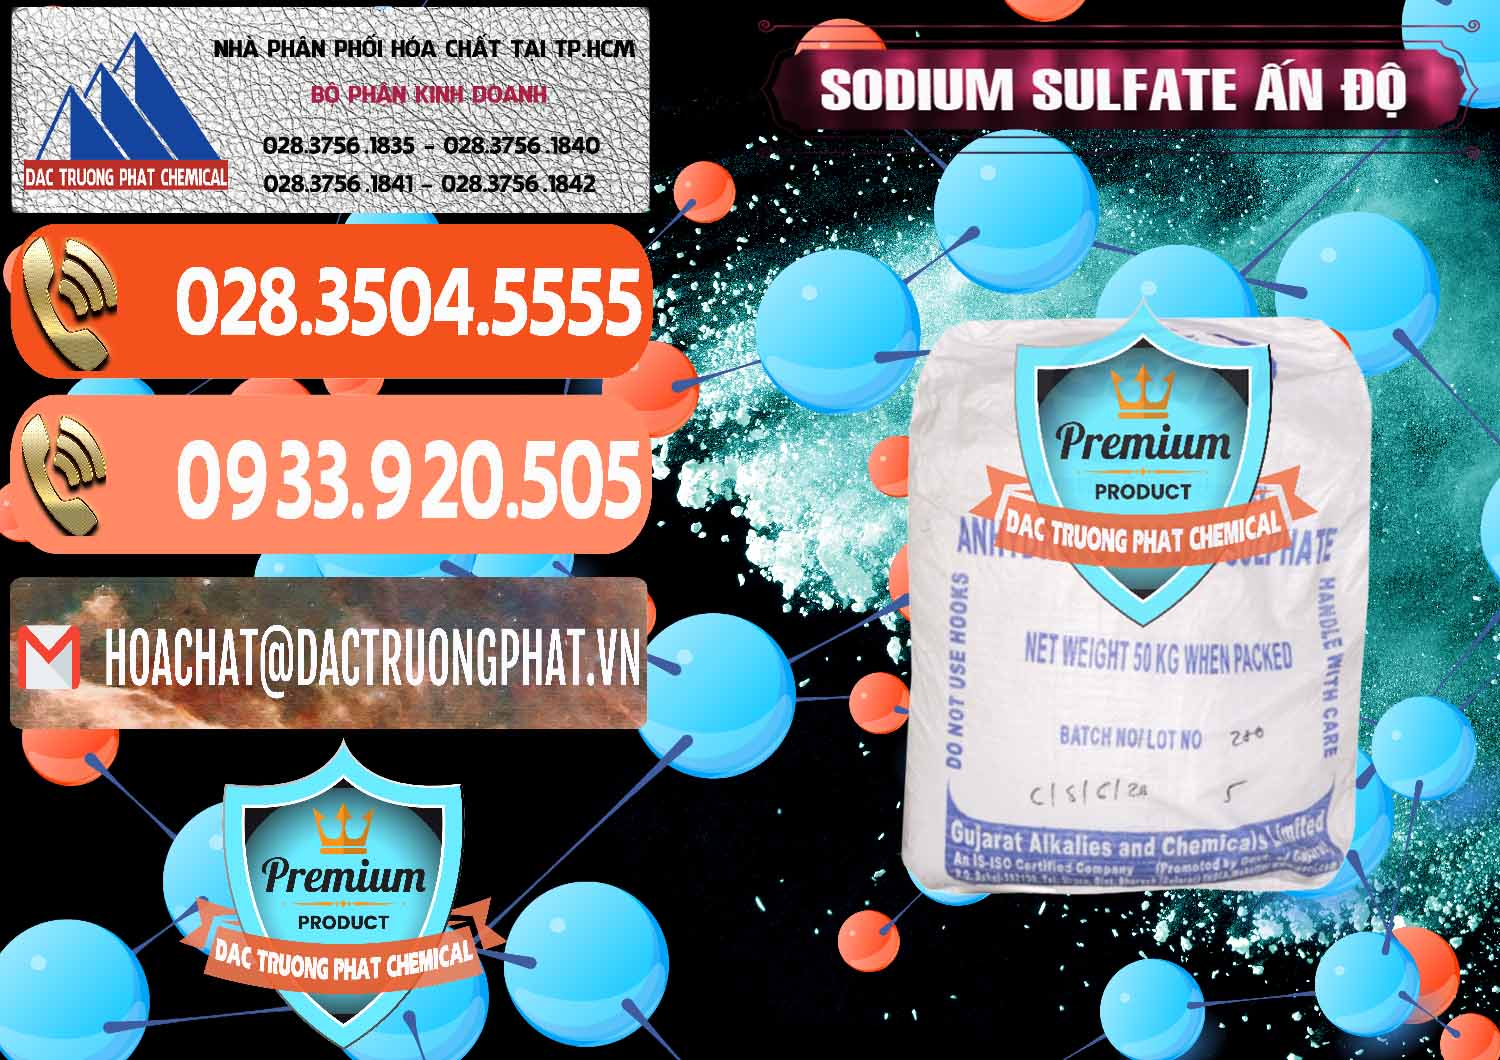 Cty bán - cung ứng Sodium Sulphate - Muối Sunfat Na2SO4 GACL Ấn Độ India - 0461 - Cty chuyên bán & cung cấp hóa chất tại TP.HCM - hoachatmientay.com